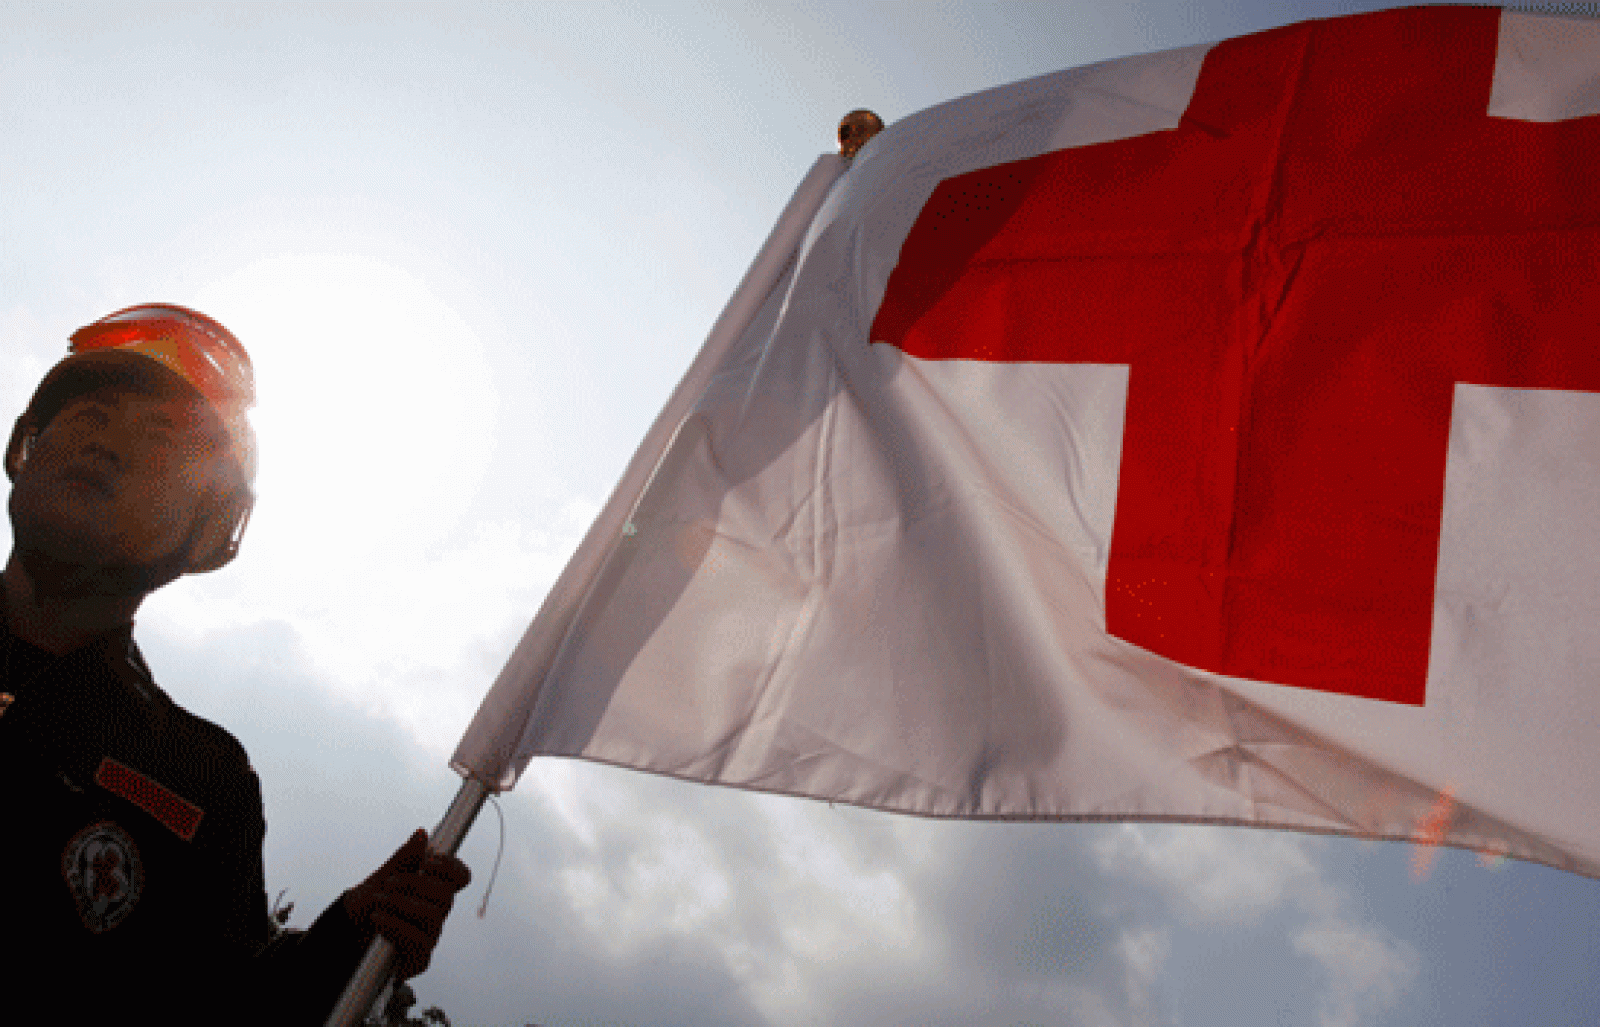 La Cruz Roja, un emblema usurpado